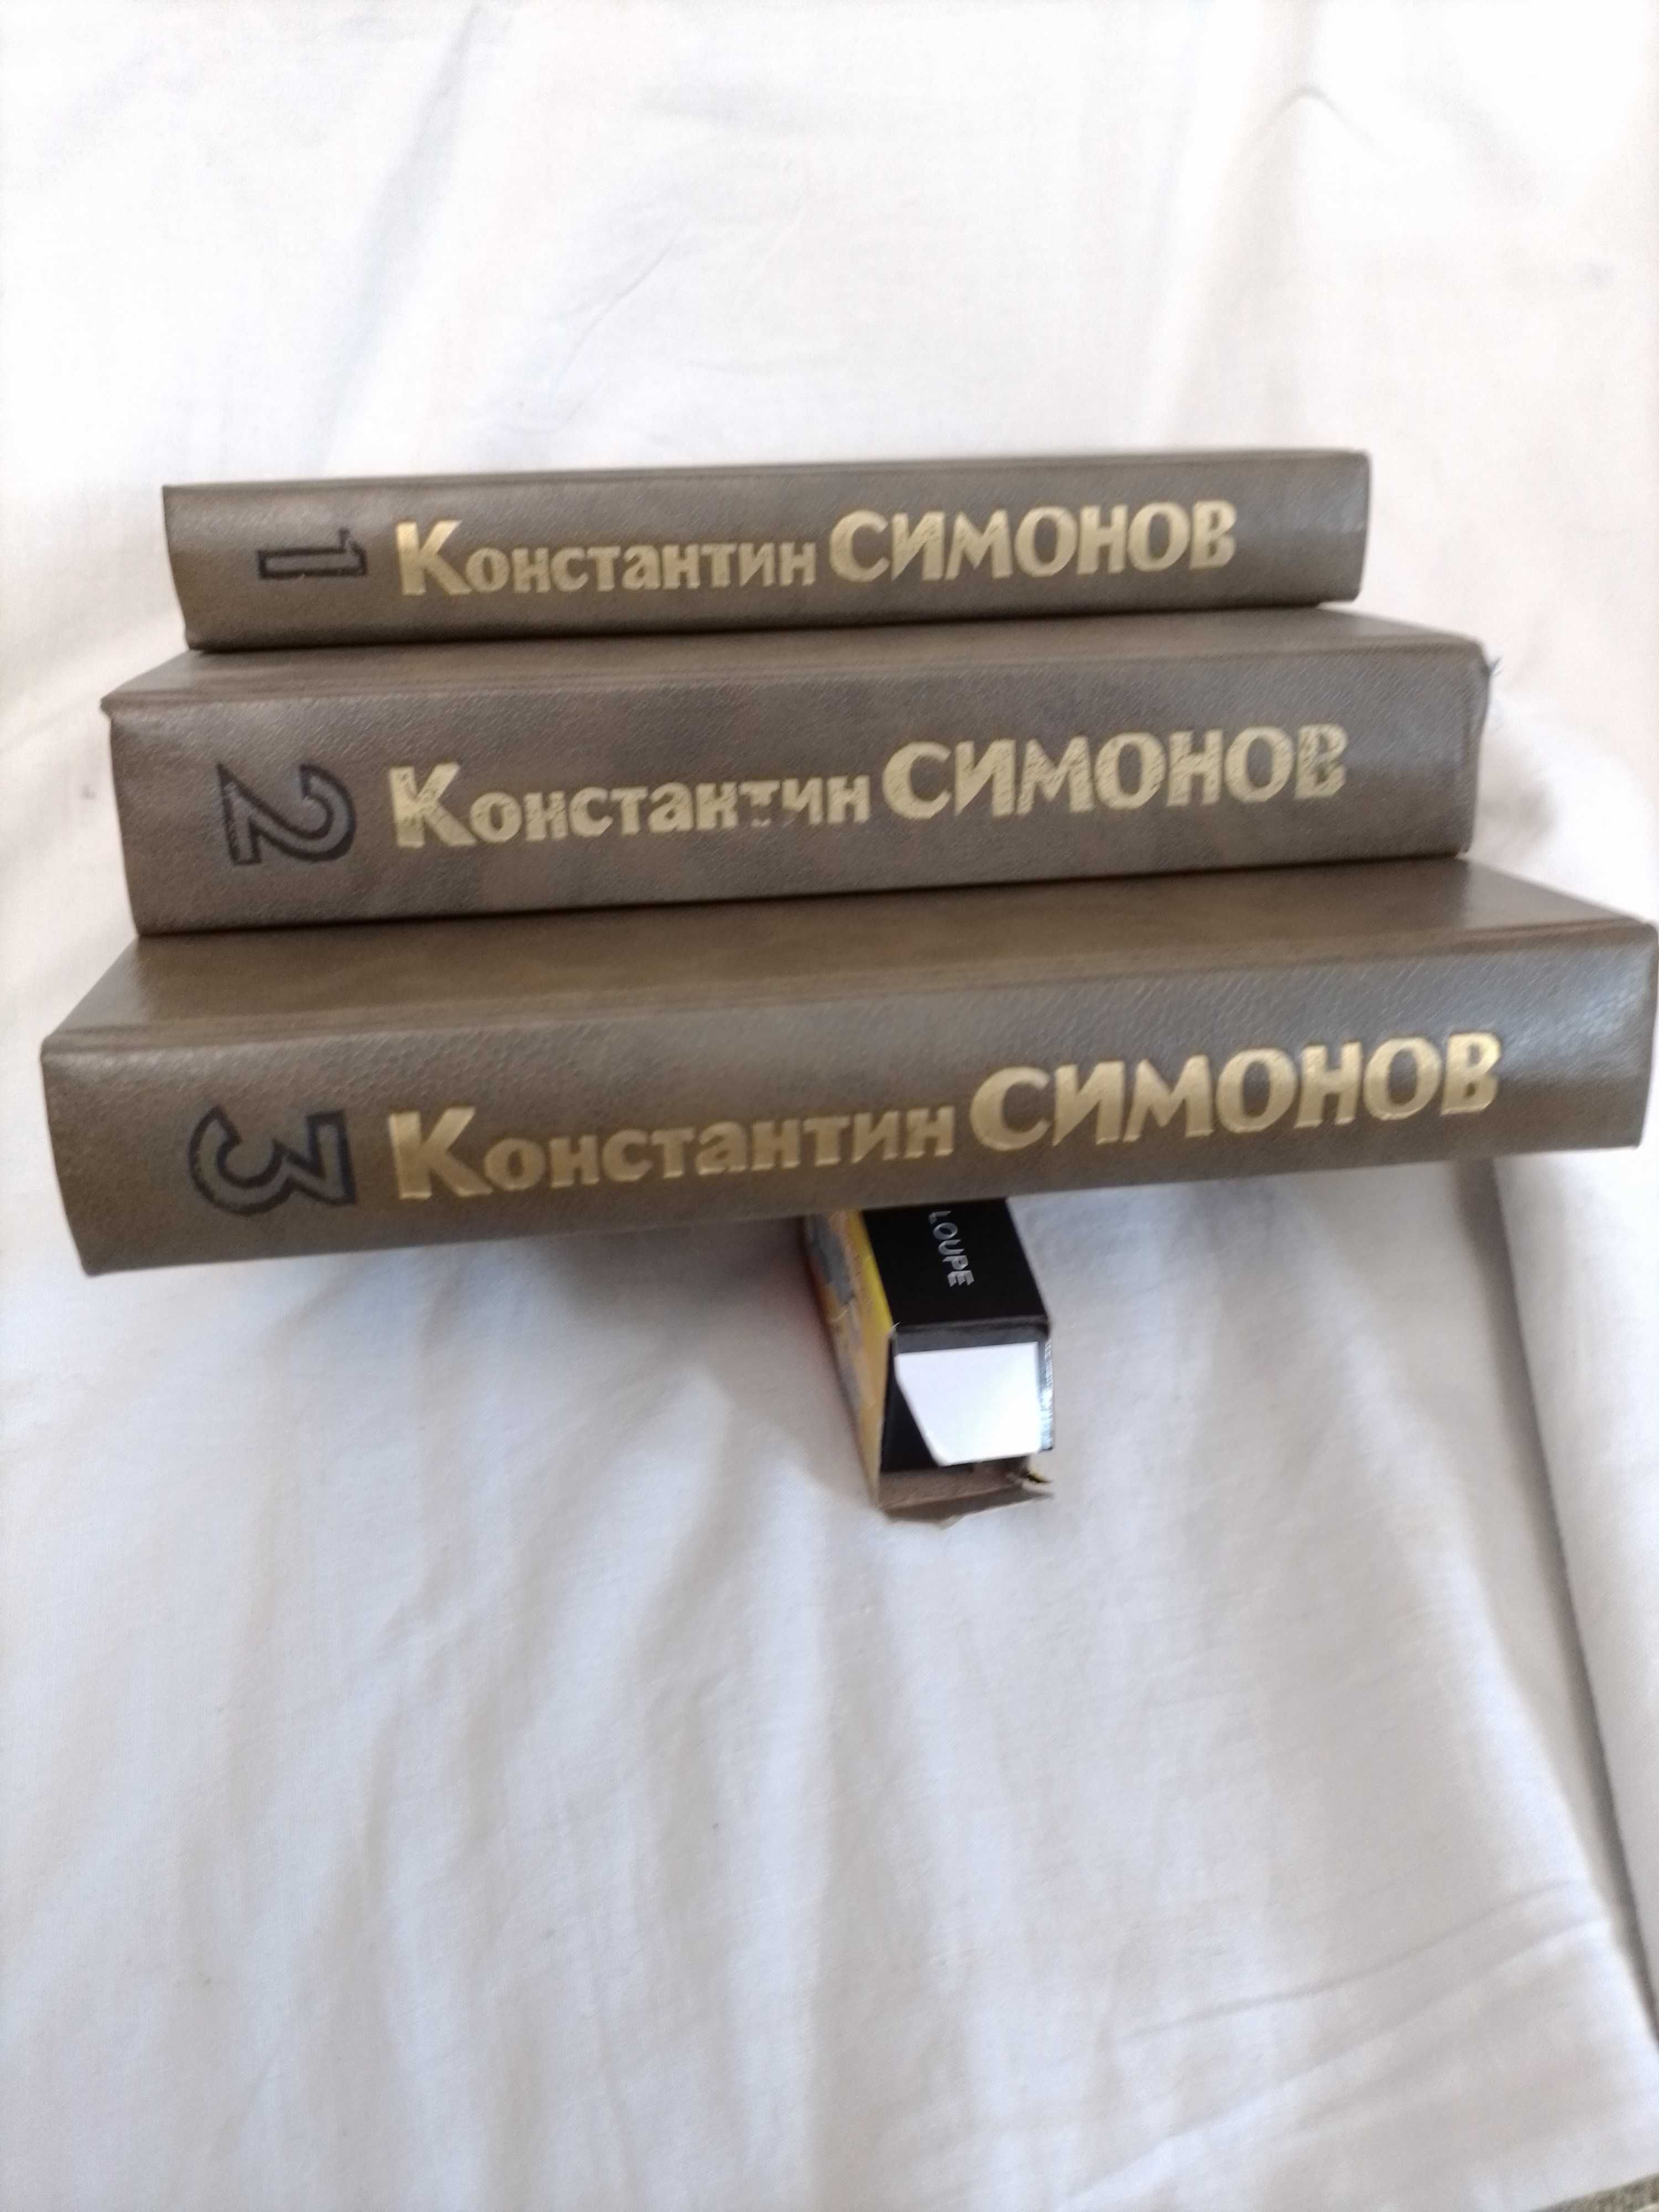 Книги Константин Симонов "Живые и мертвые"